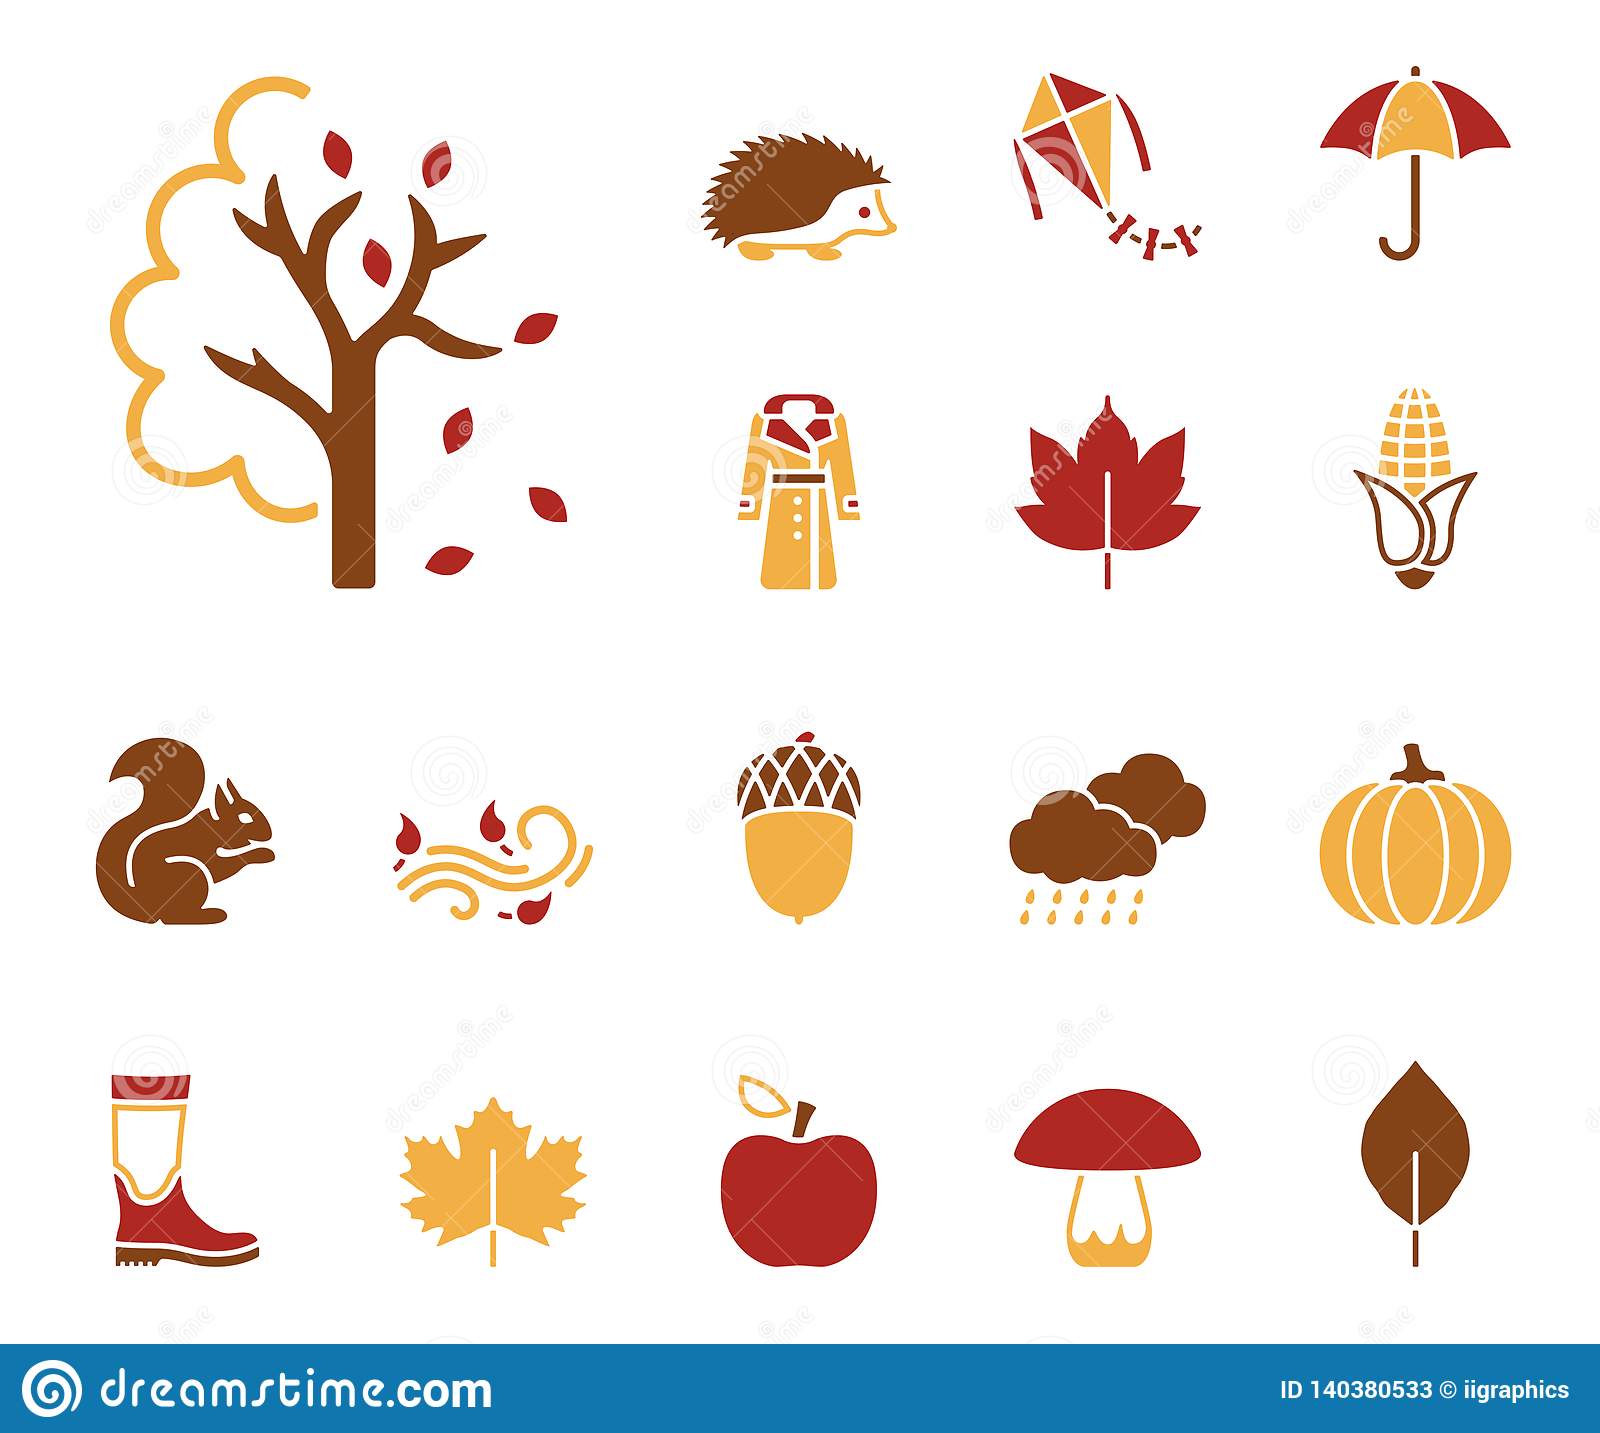 Autumn icon set stock illustration. Illustration of harvest - 140380533